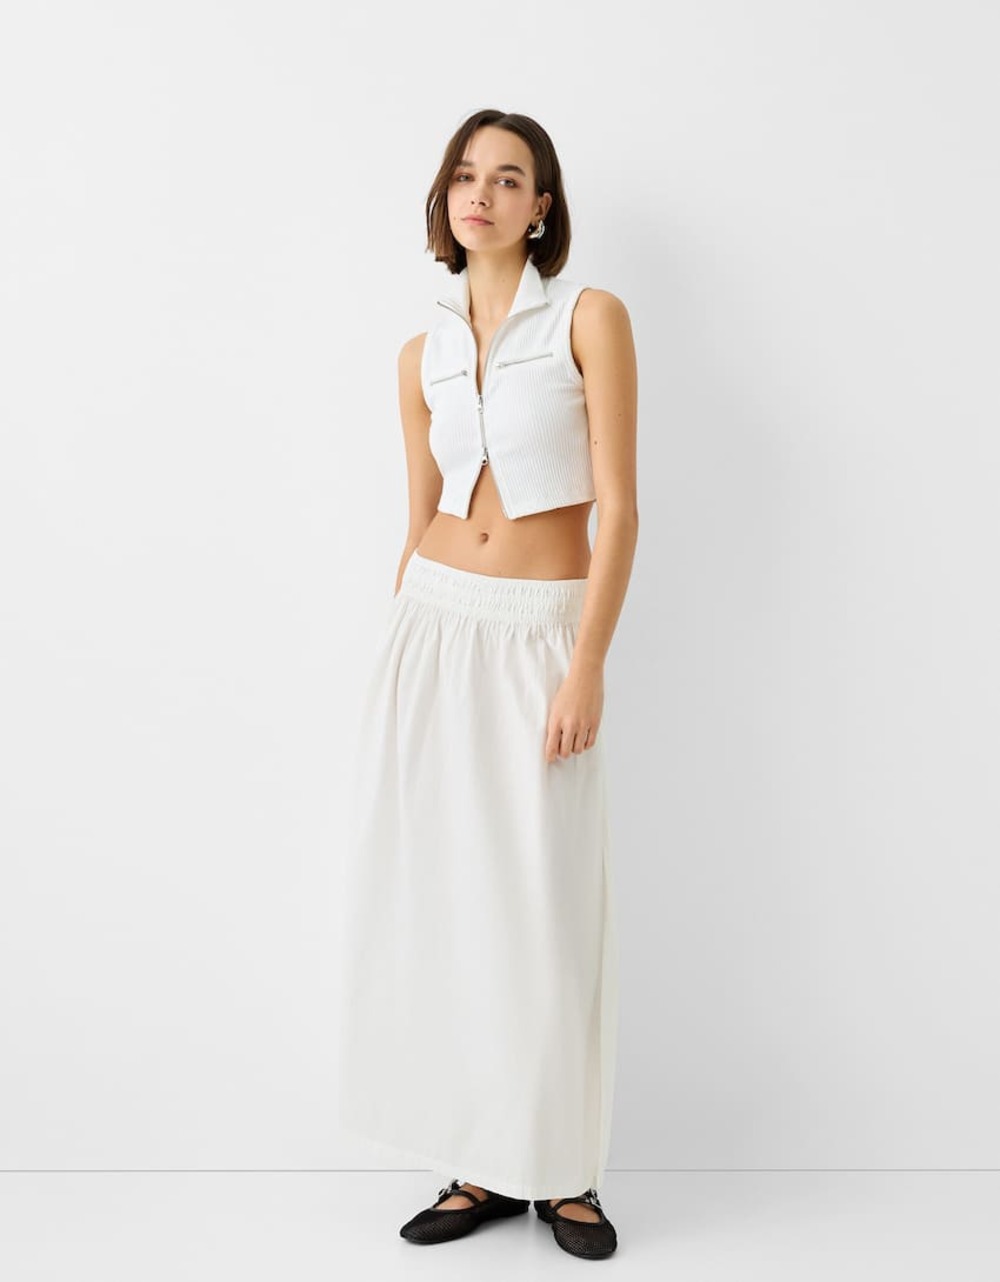 suknja 7 Bele suknje: WNB stilisti izdvajaju najlepše modele sa domaćeg tržišta